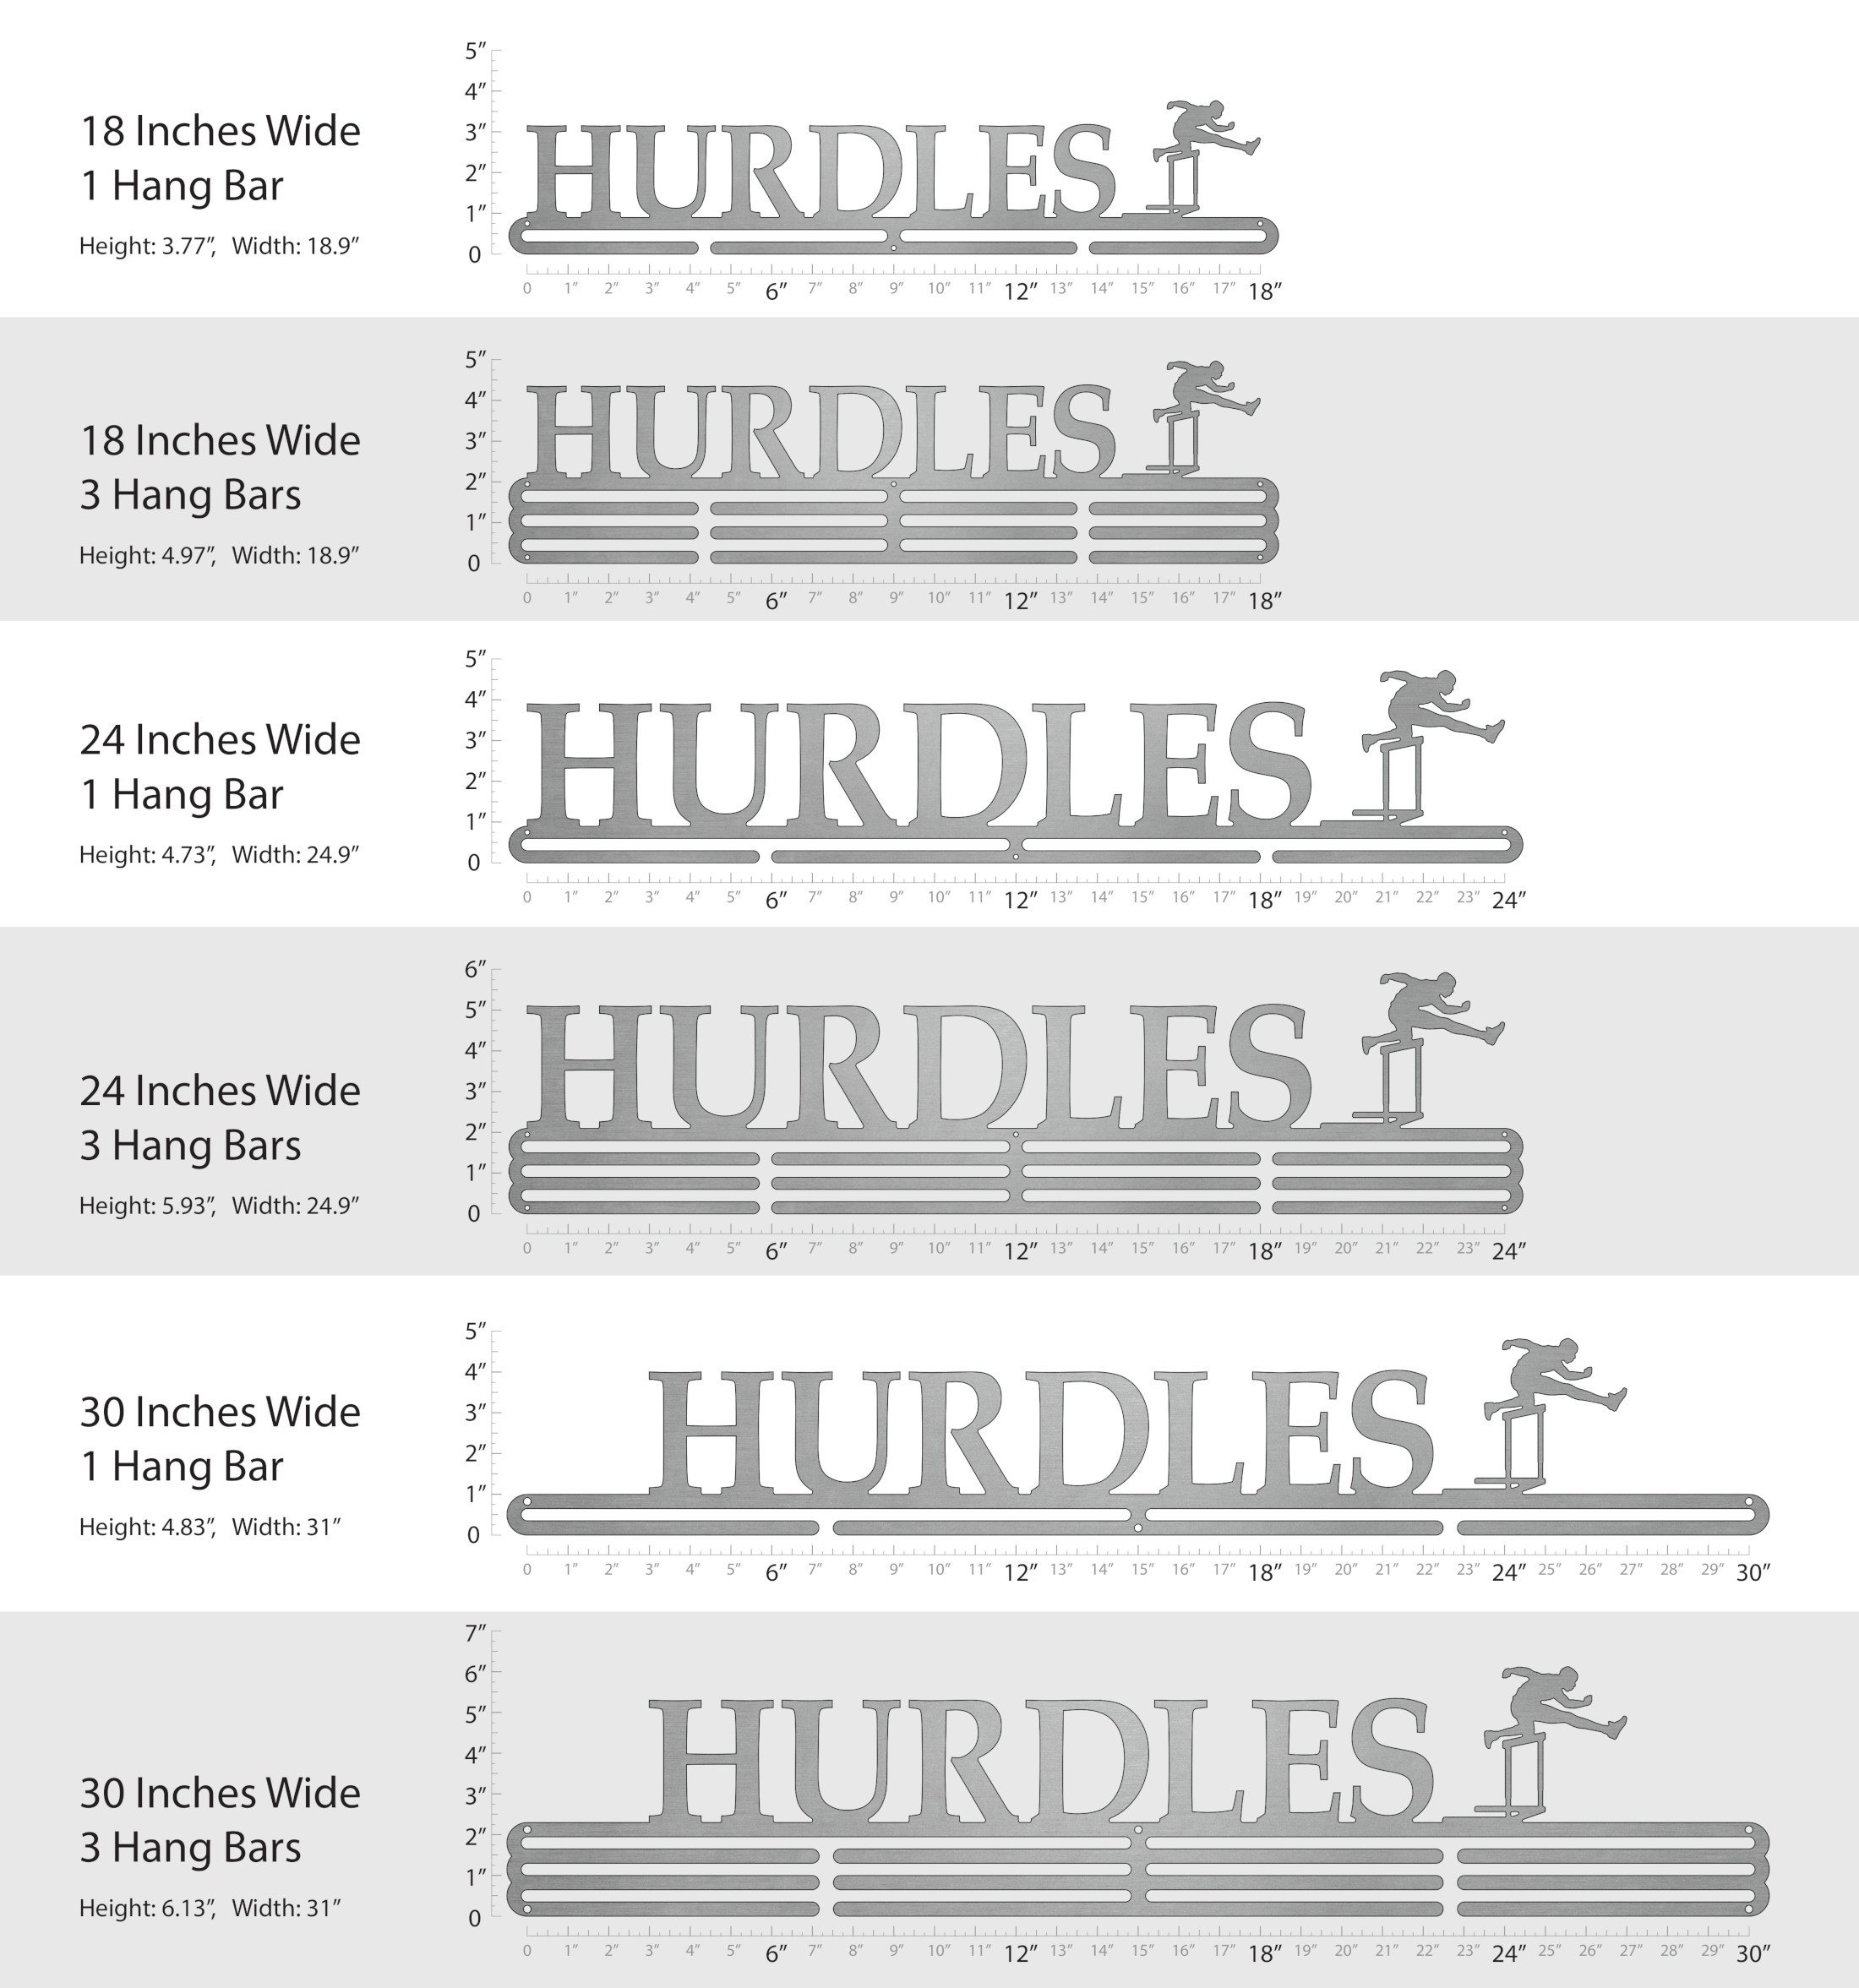 Hurdles - Male